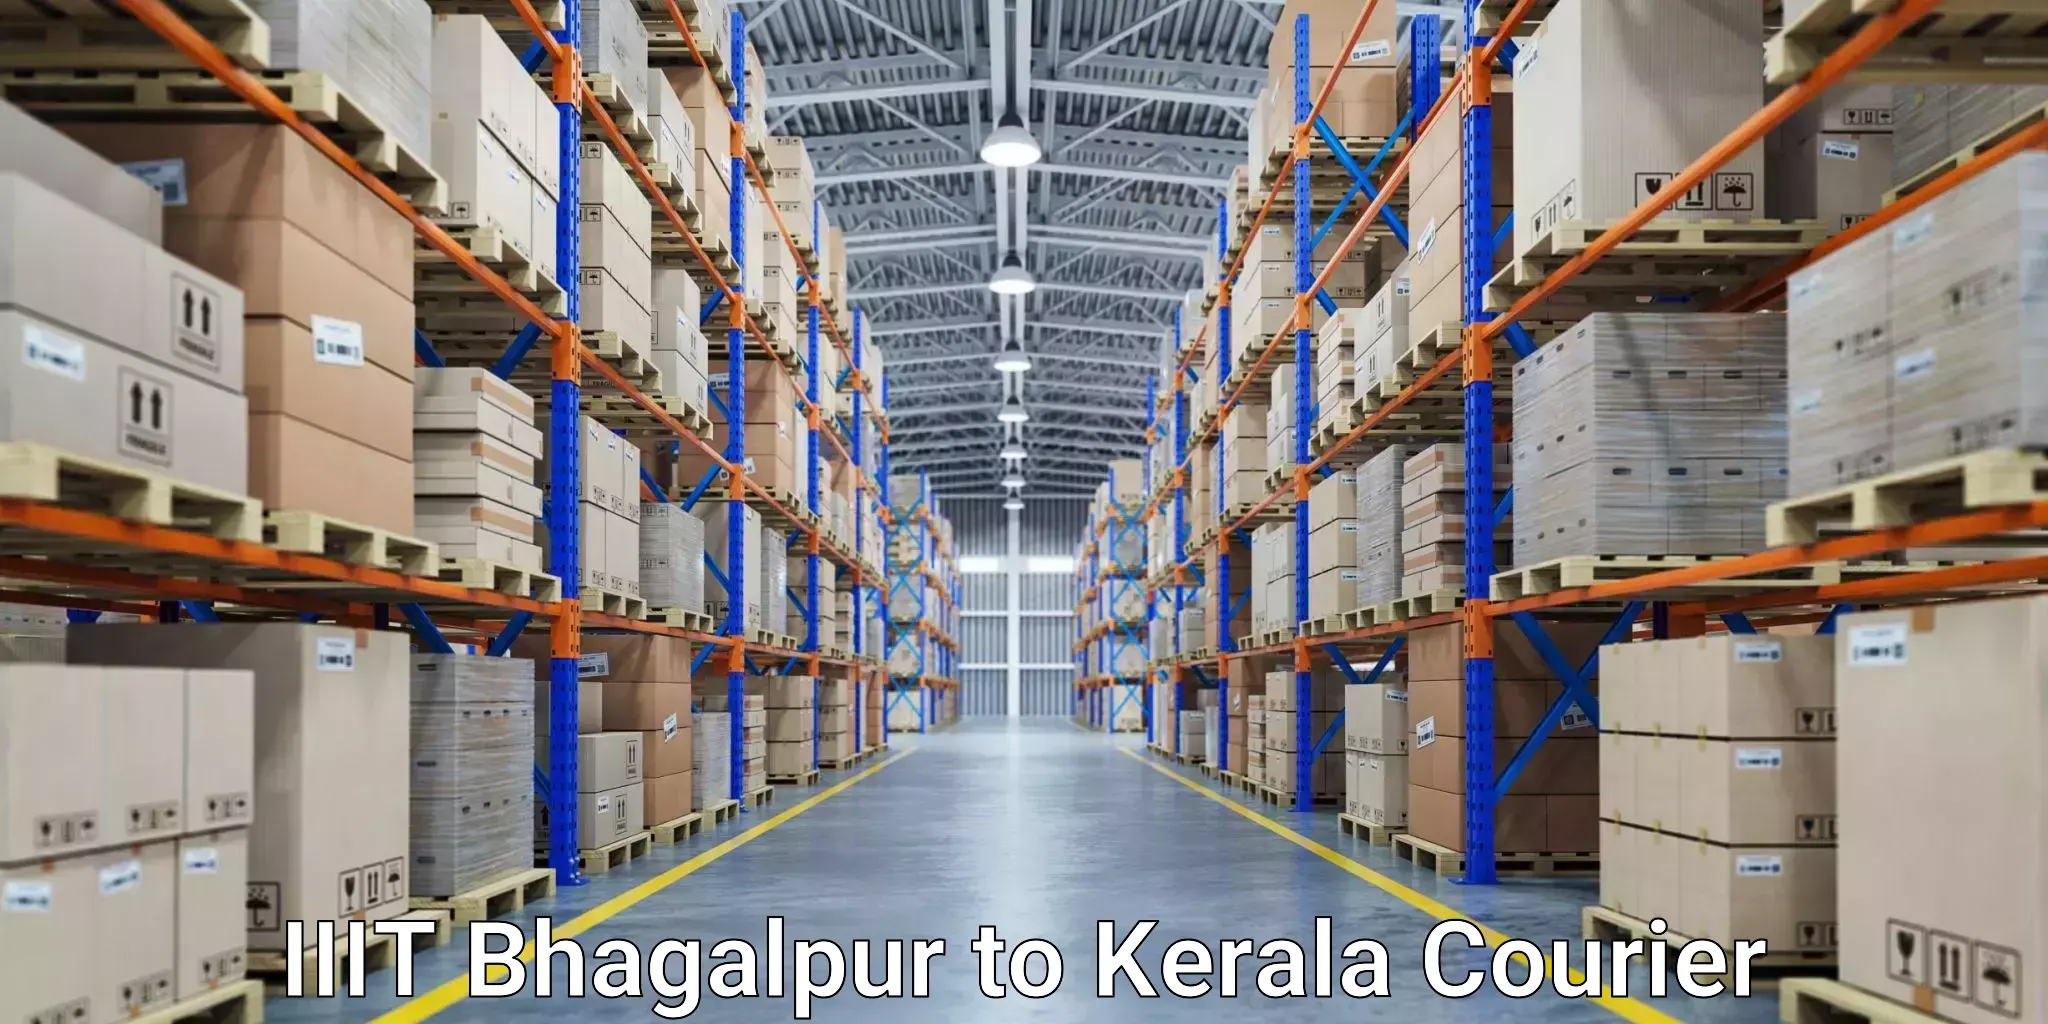 Specialized courier services IIIT Bhagalpur to Kazhakkoottam